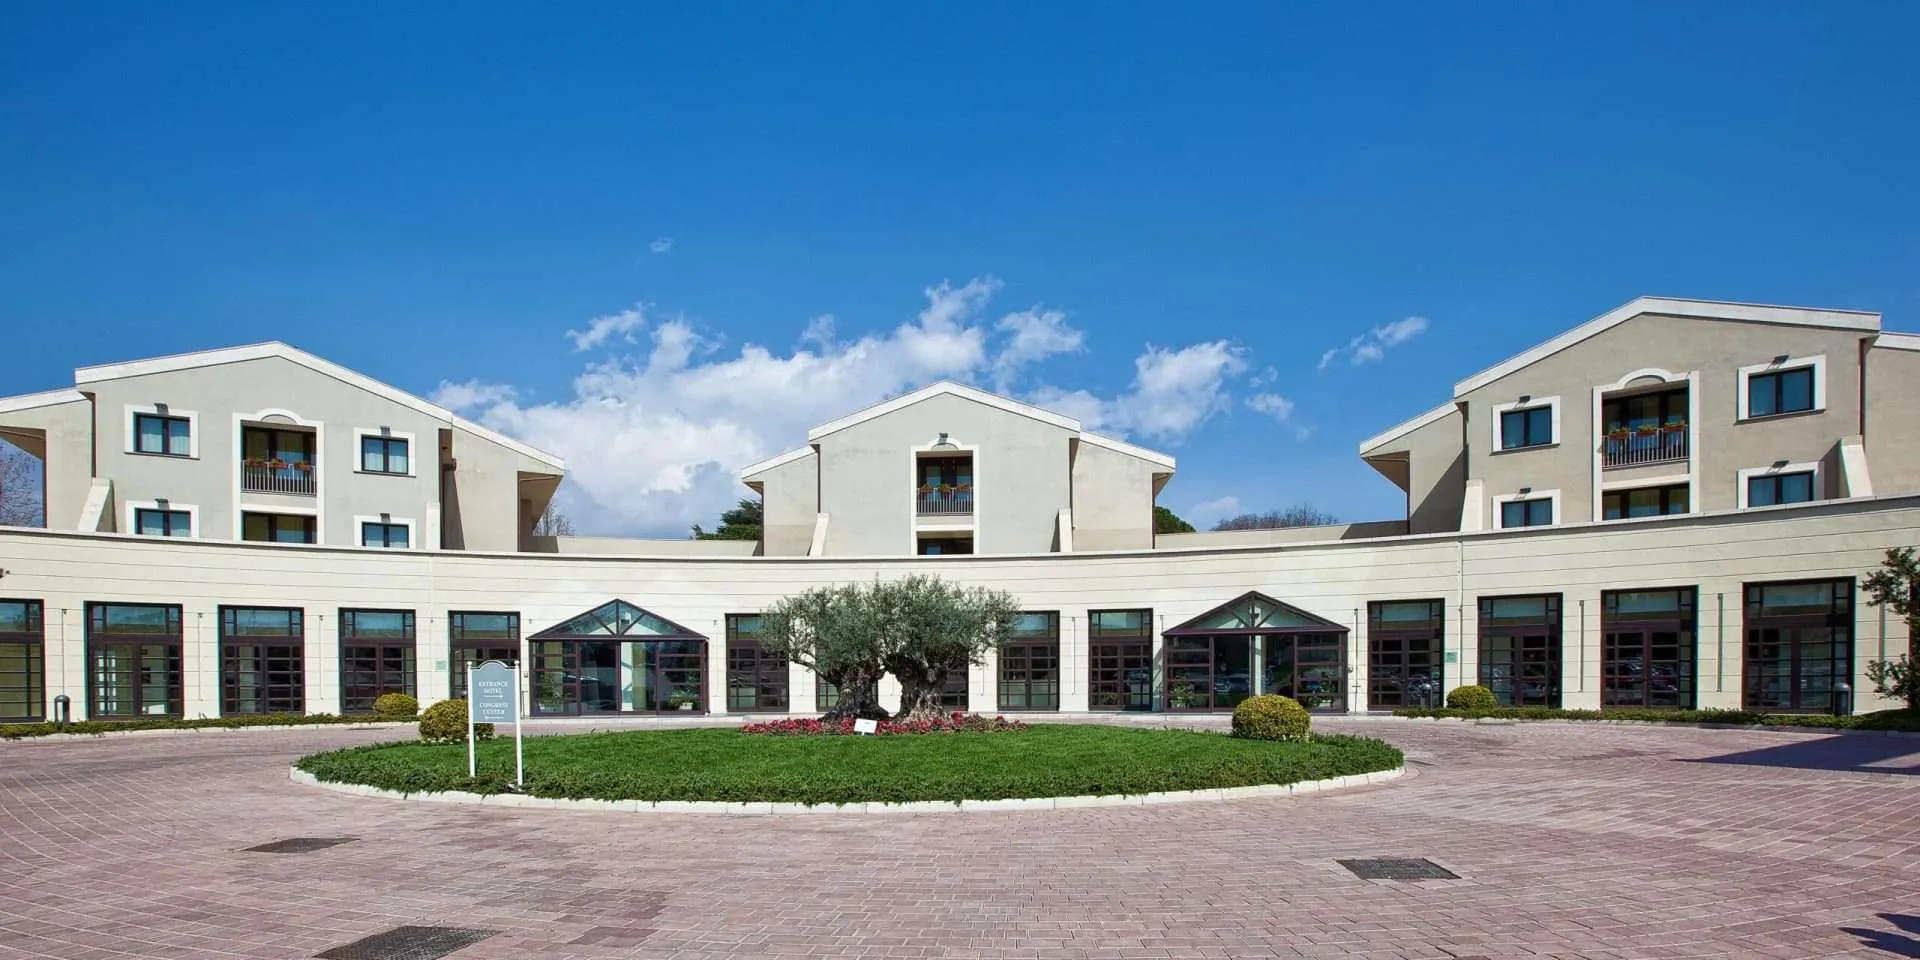 Grand Hotel Villa Itria